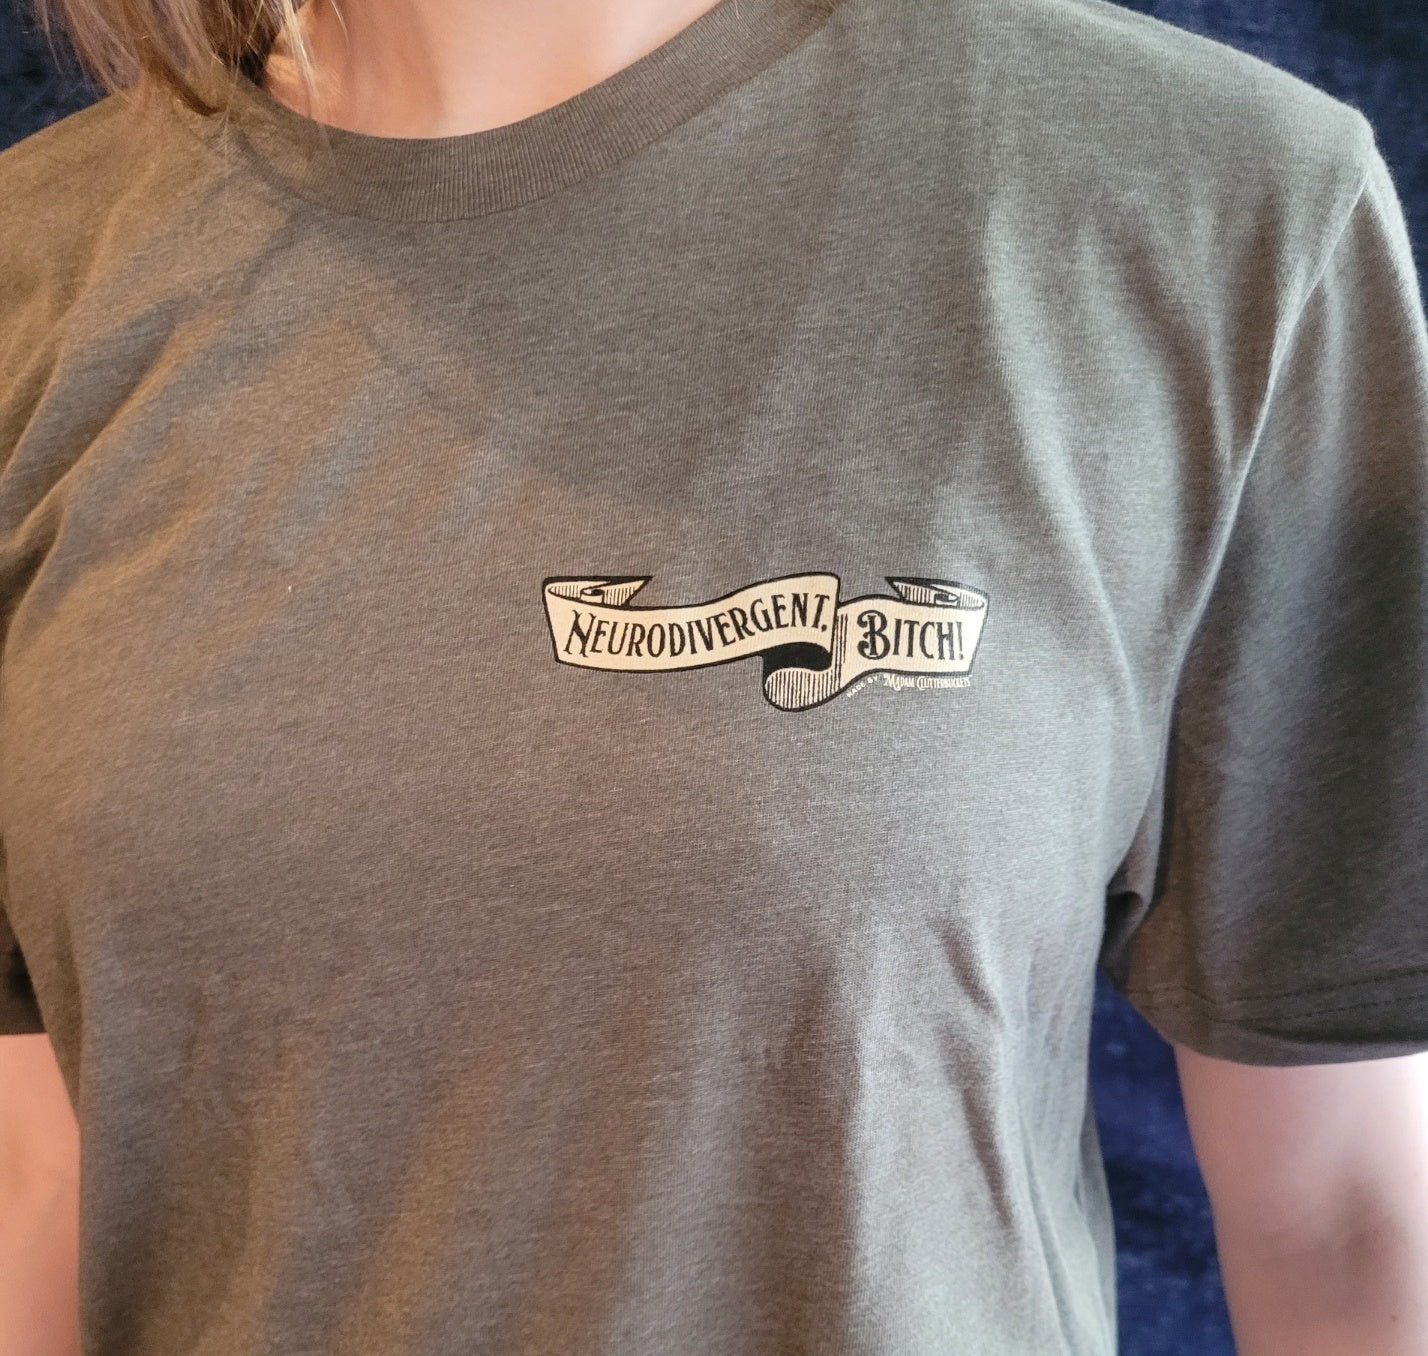 Neurodivergent, Bitch! T-shirt